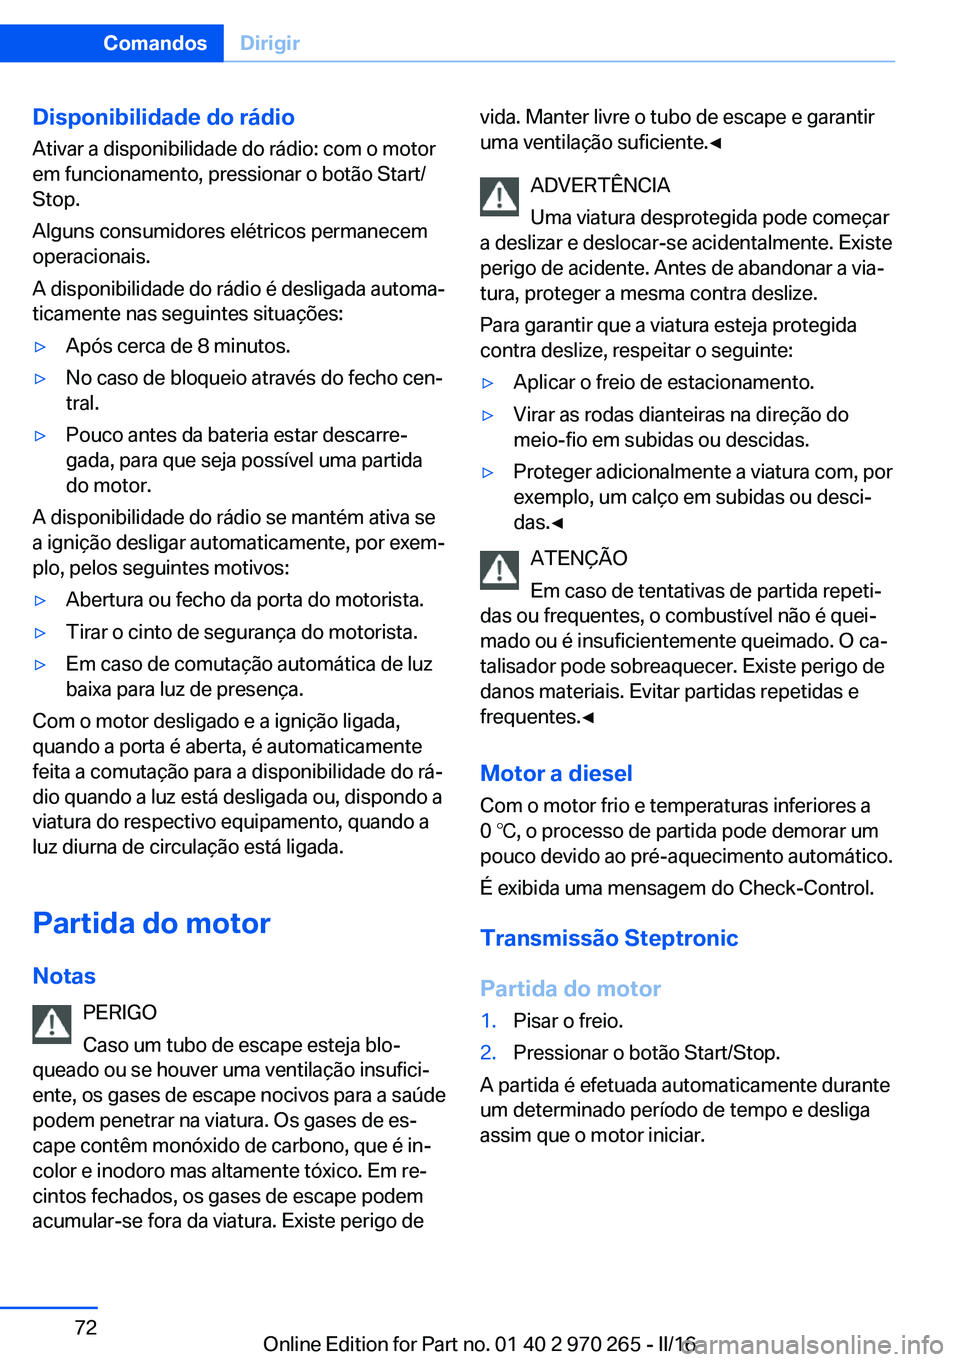 BMW 4 SERIES GRAN COUPE 2016  Manual do condutor (in Portuguese) Disponibilidade do rádioAtivar a disponibilidade do rádio: com o motor
em funcionamento, pressionar o botão Start/
Stop.
Alguns consumidores elétricos permanecem
operacionais.
A disponibilidade do